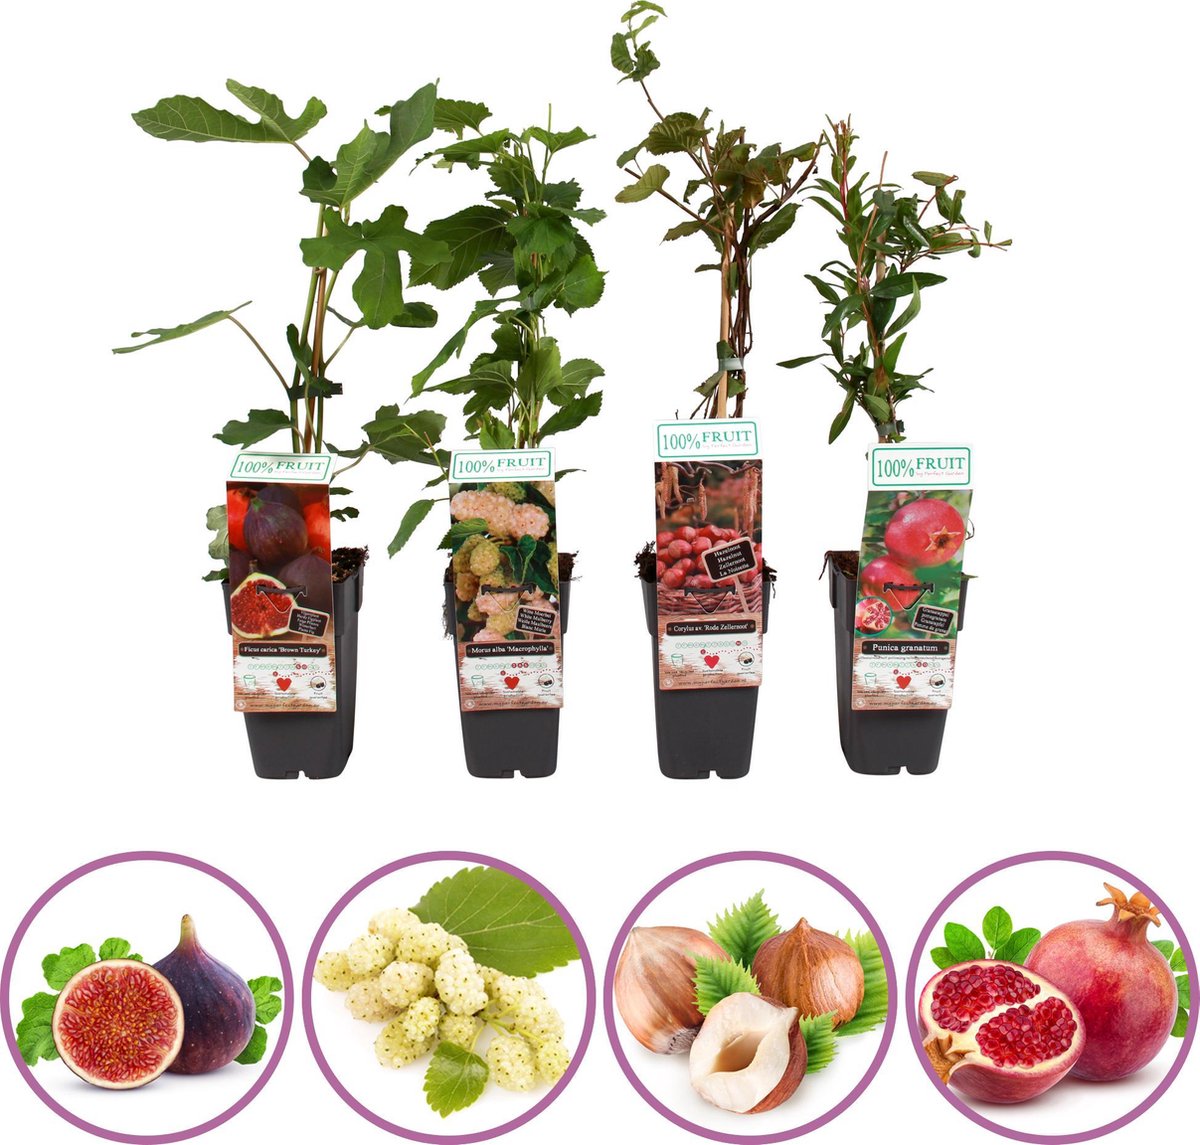 Boskoopse Fruitbomen Exclusieve fruitplanten mix set van 4 fruitplanten: vijg witte moerbei hazelnoot granaatappel hoogte 50-60 cm